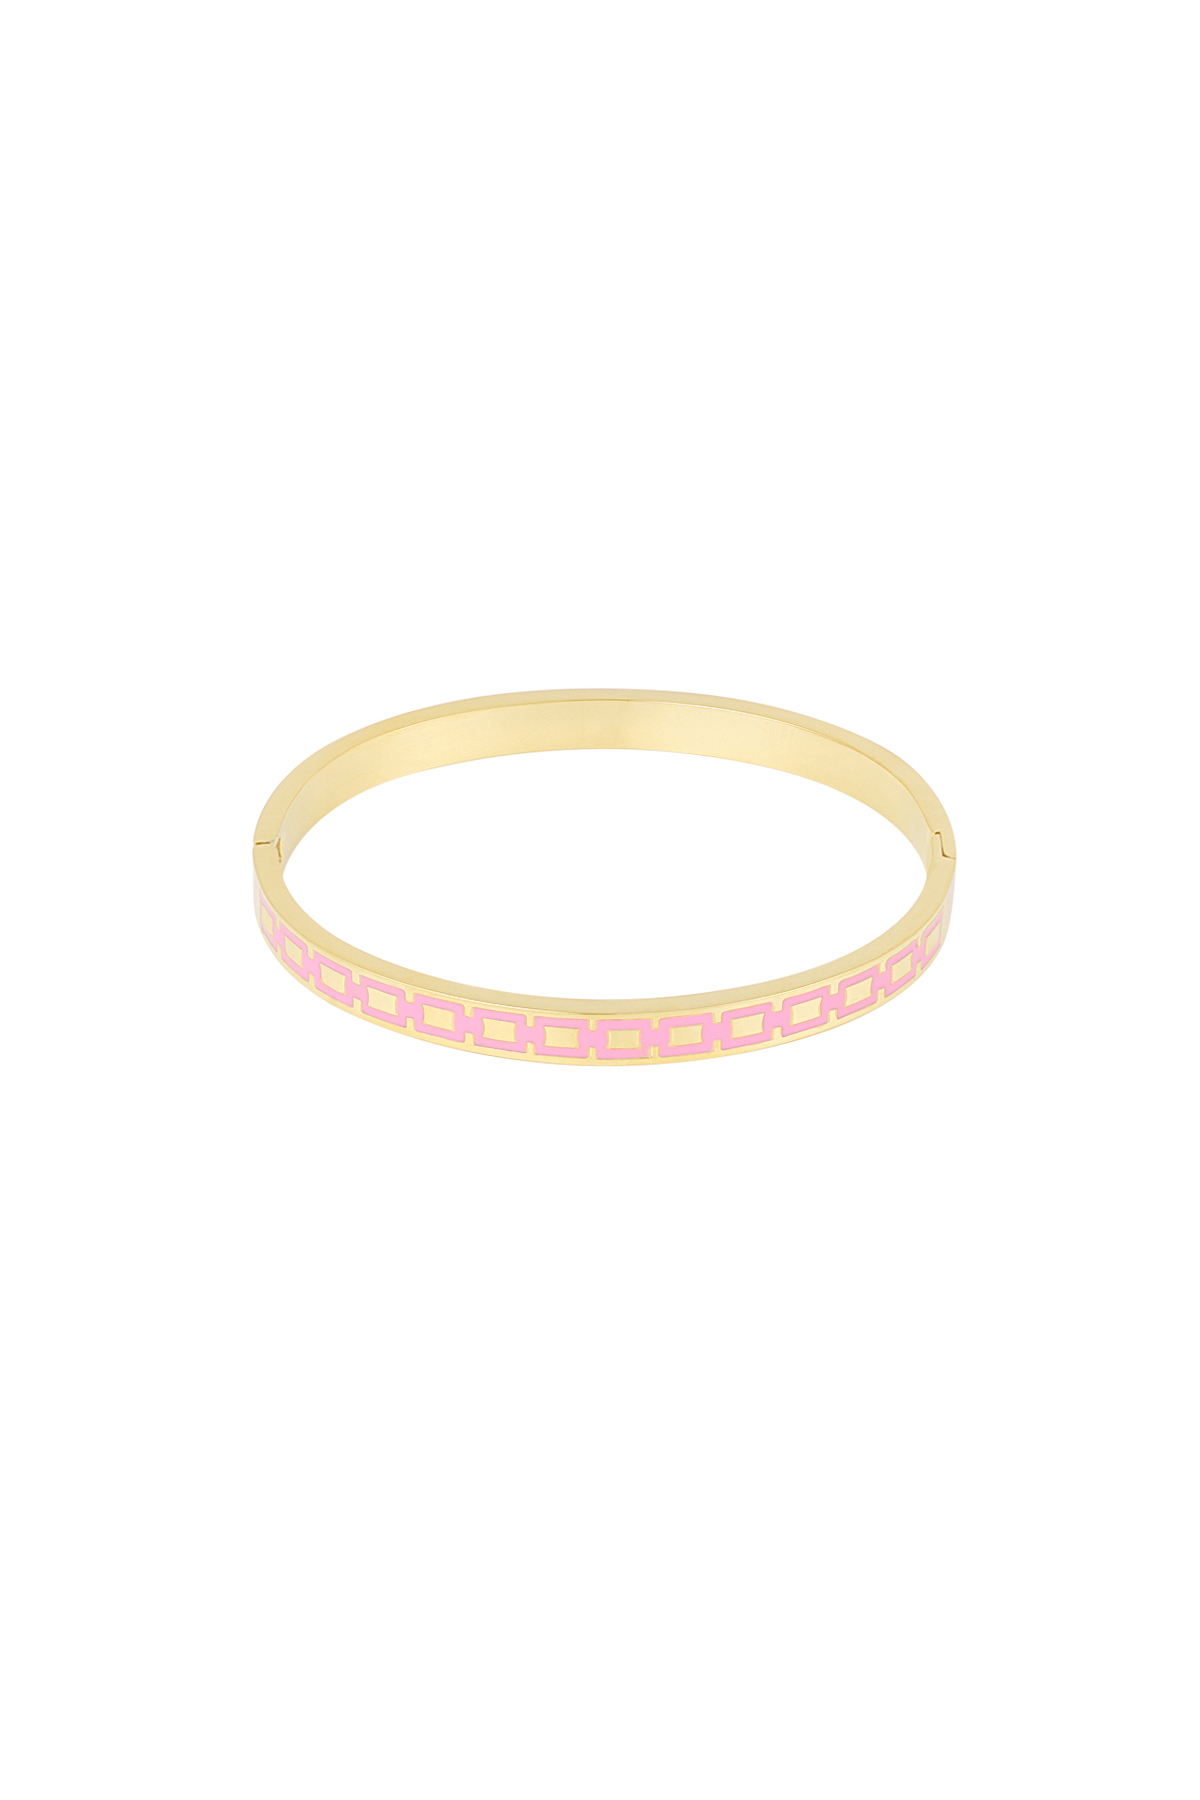 Slave bracelet with print - pink/gold  h5 